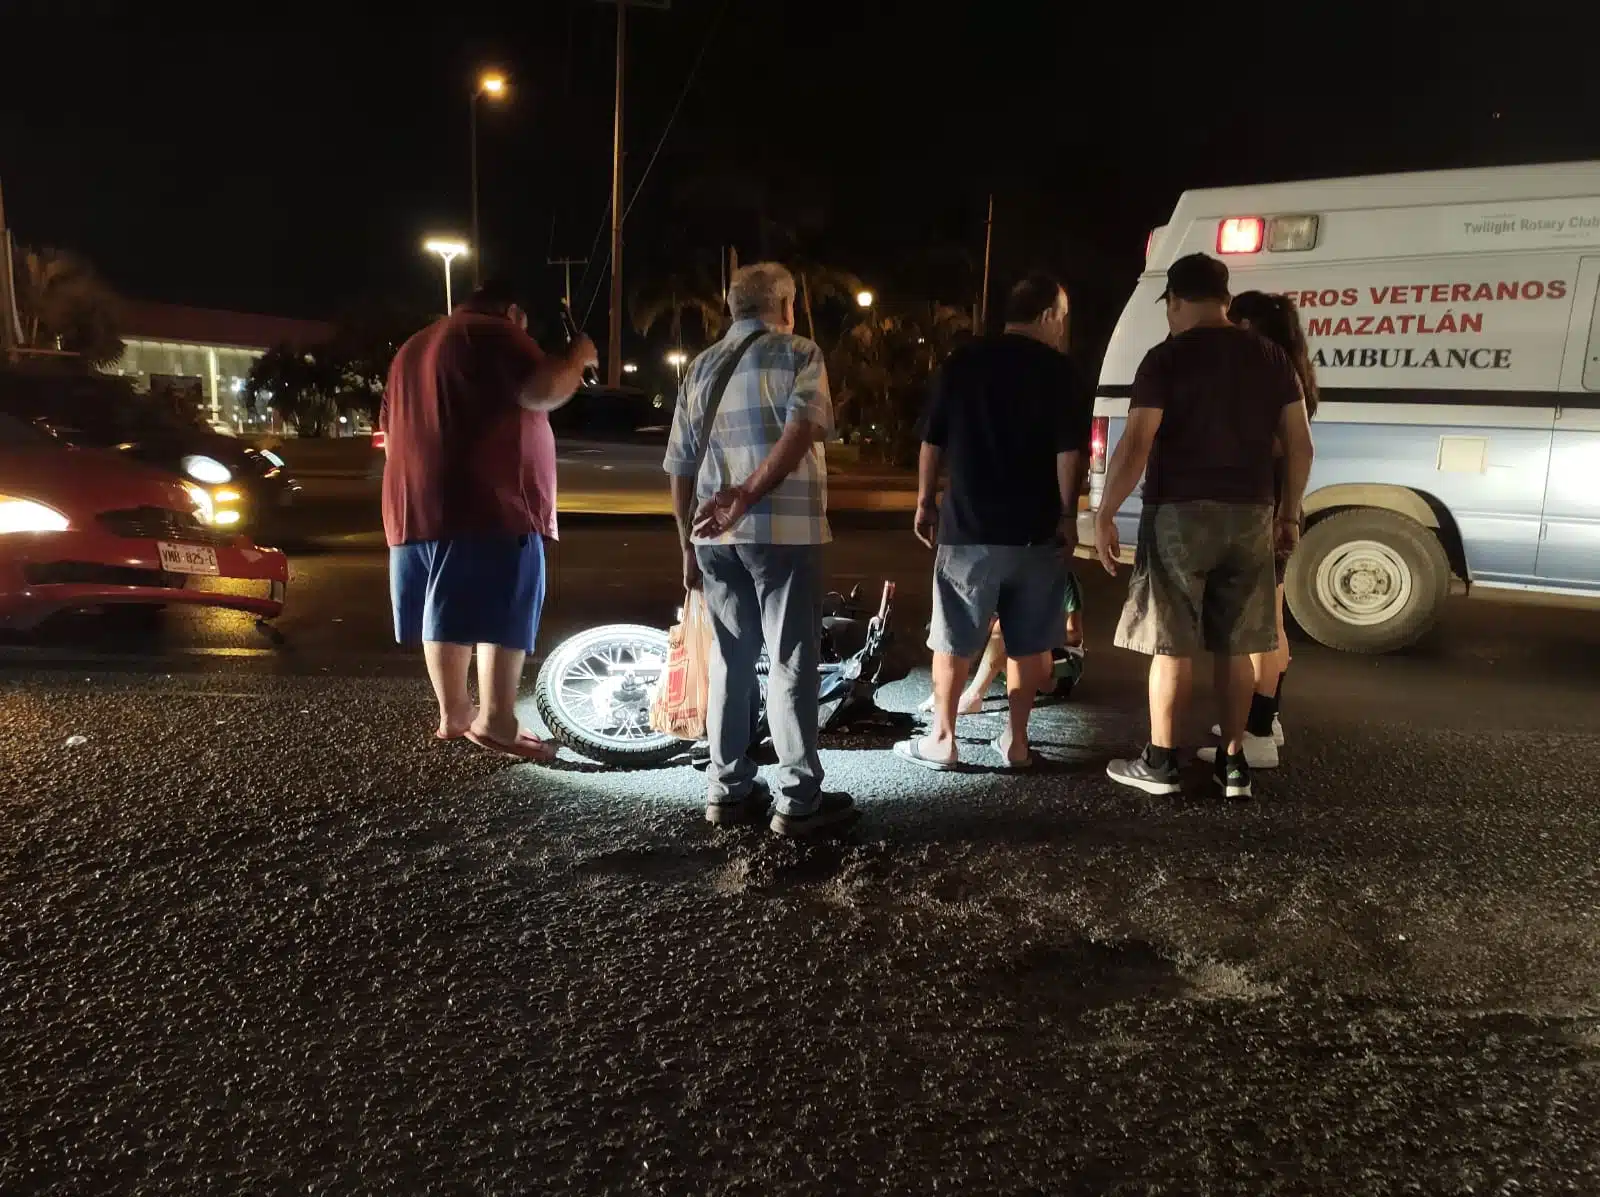 ¡Ignoraron la luz roja! Se impactan moto y automóvil frente al ICO en Mazatlán